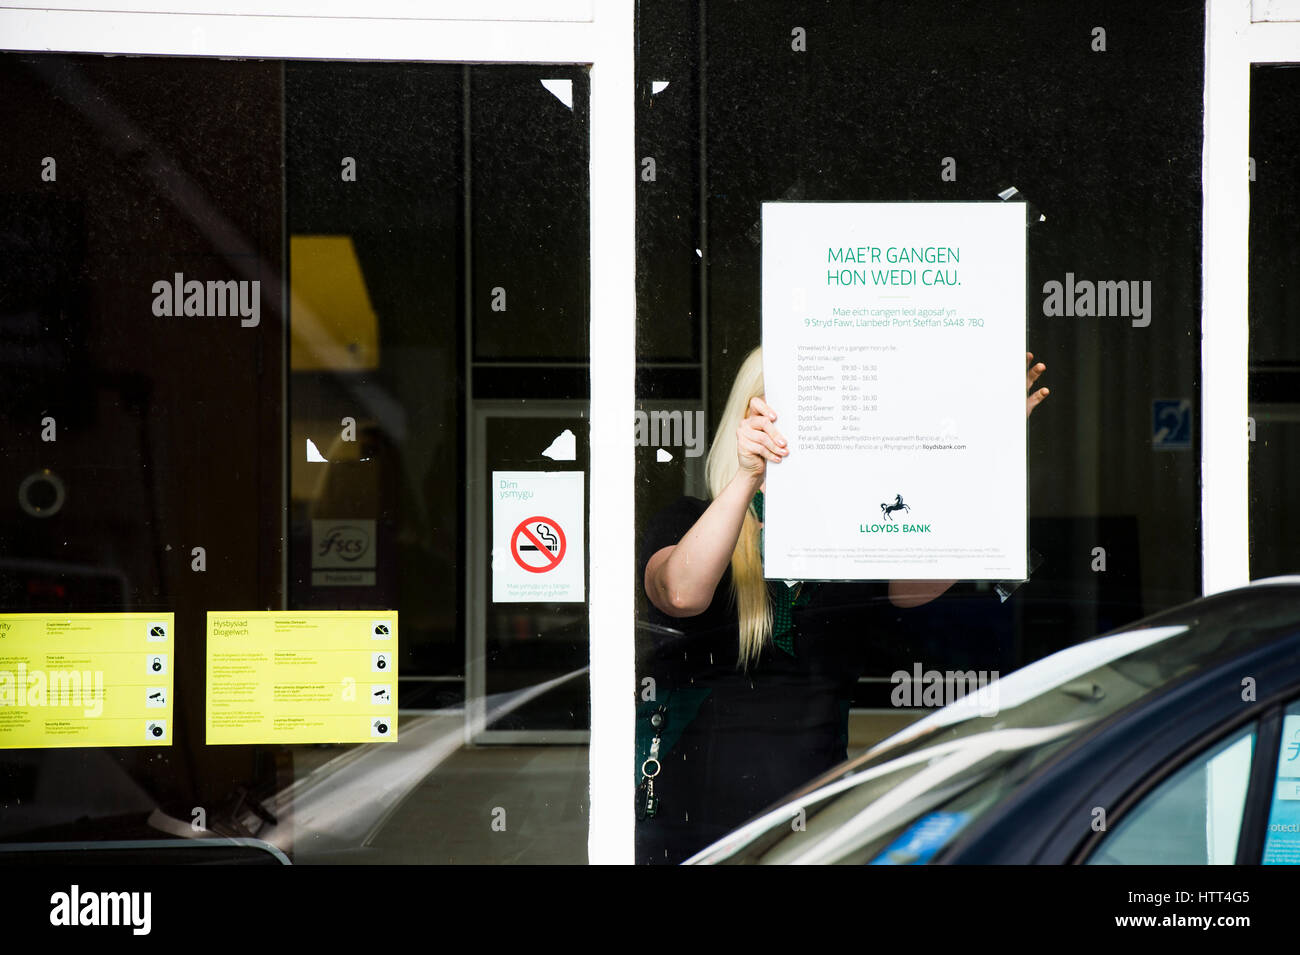 Lloyds Bank schließt seine Niederlassung in einem kleinen walisischen Stadt: 9. März 2017 - Angestellter Frau erträgt walisische Sprache Informationen Plakat im Fenster des Ortsverbandes der Lloyds Bank, am Nachmittag geschlossen für das gute, in der kleinen ländlichen Tregaron Dorf Ceredigion Wales UK Stockfoto